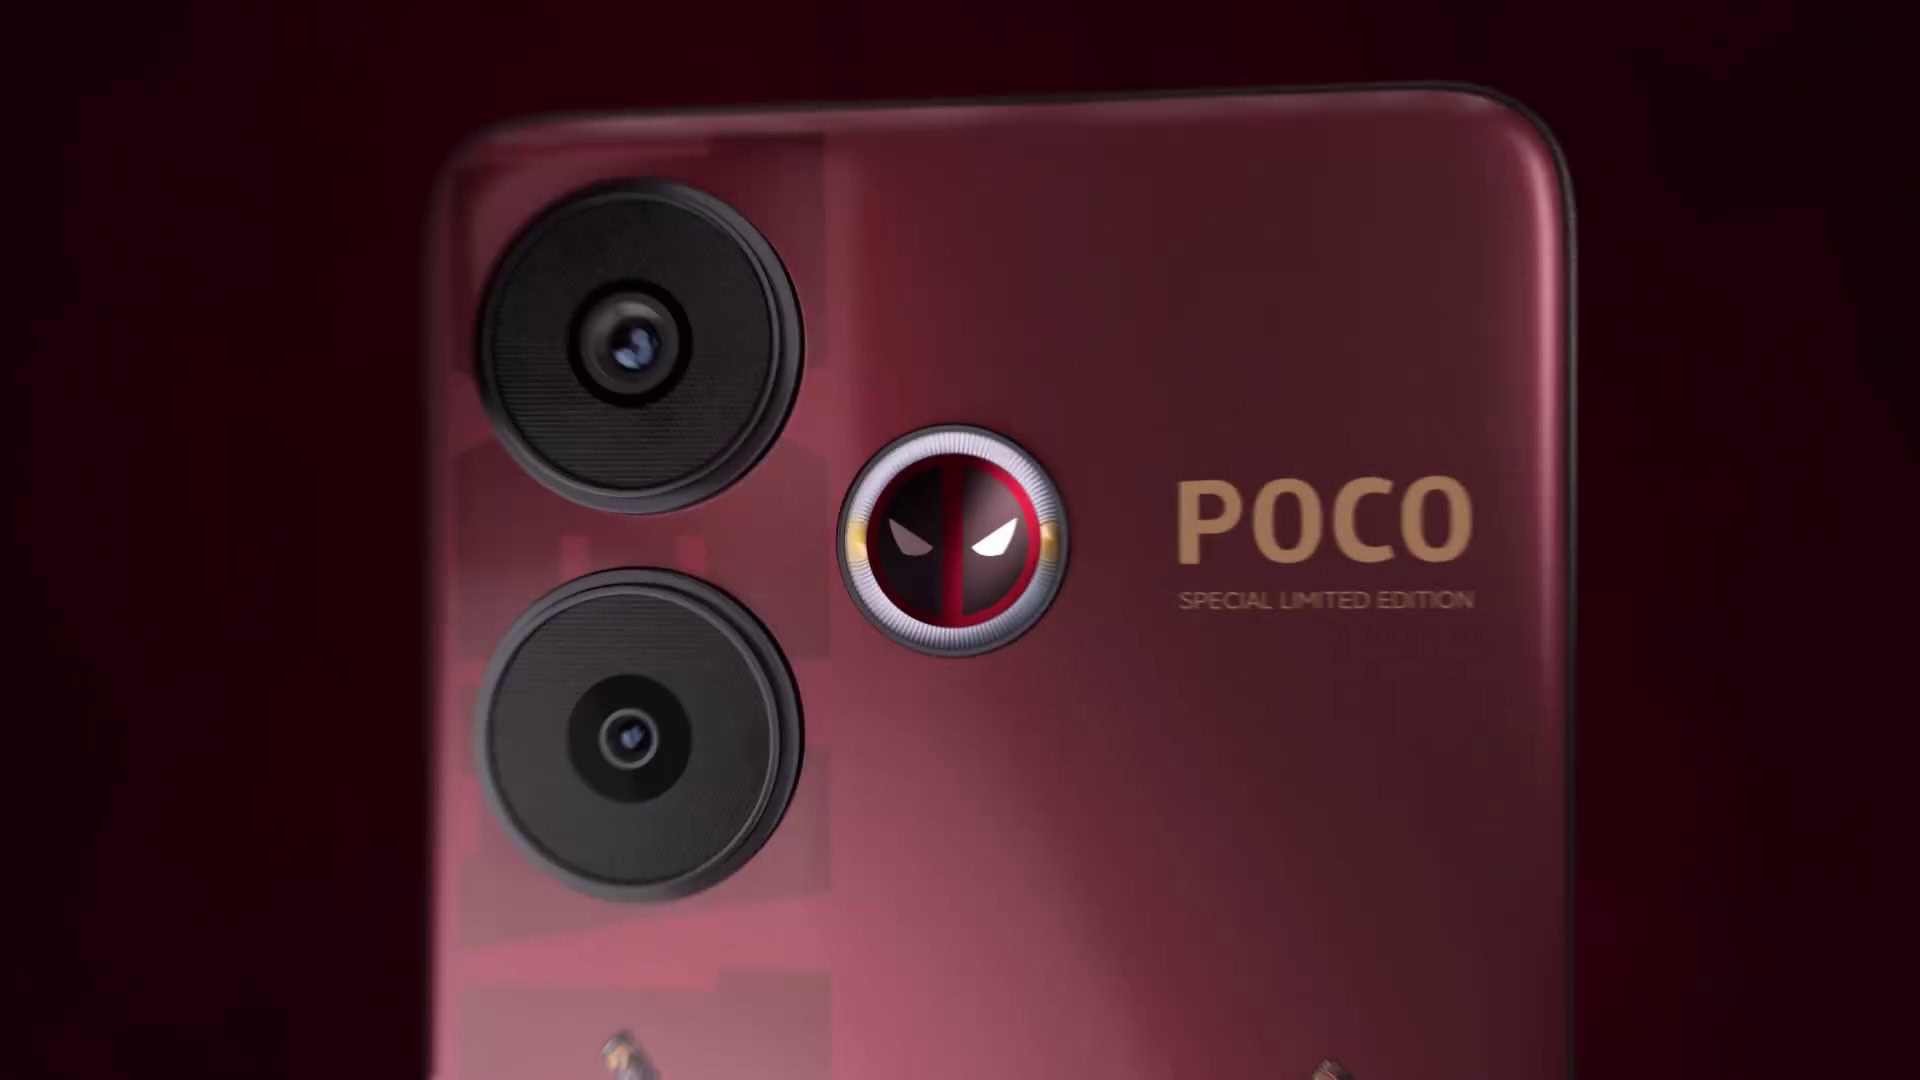 デッドプールの公式スマートフォンが登場、とても赤いです